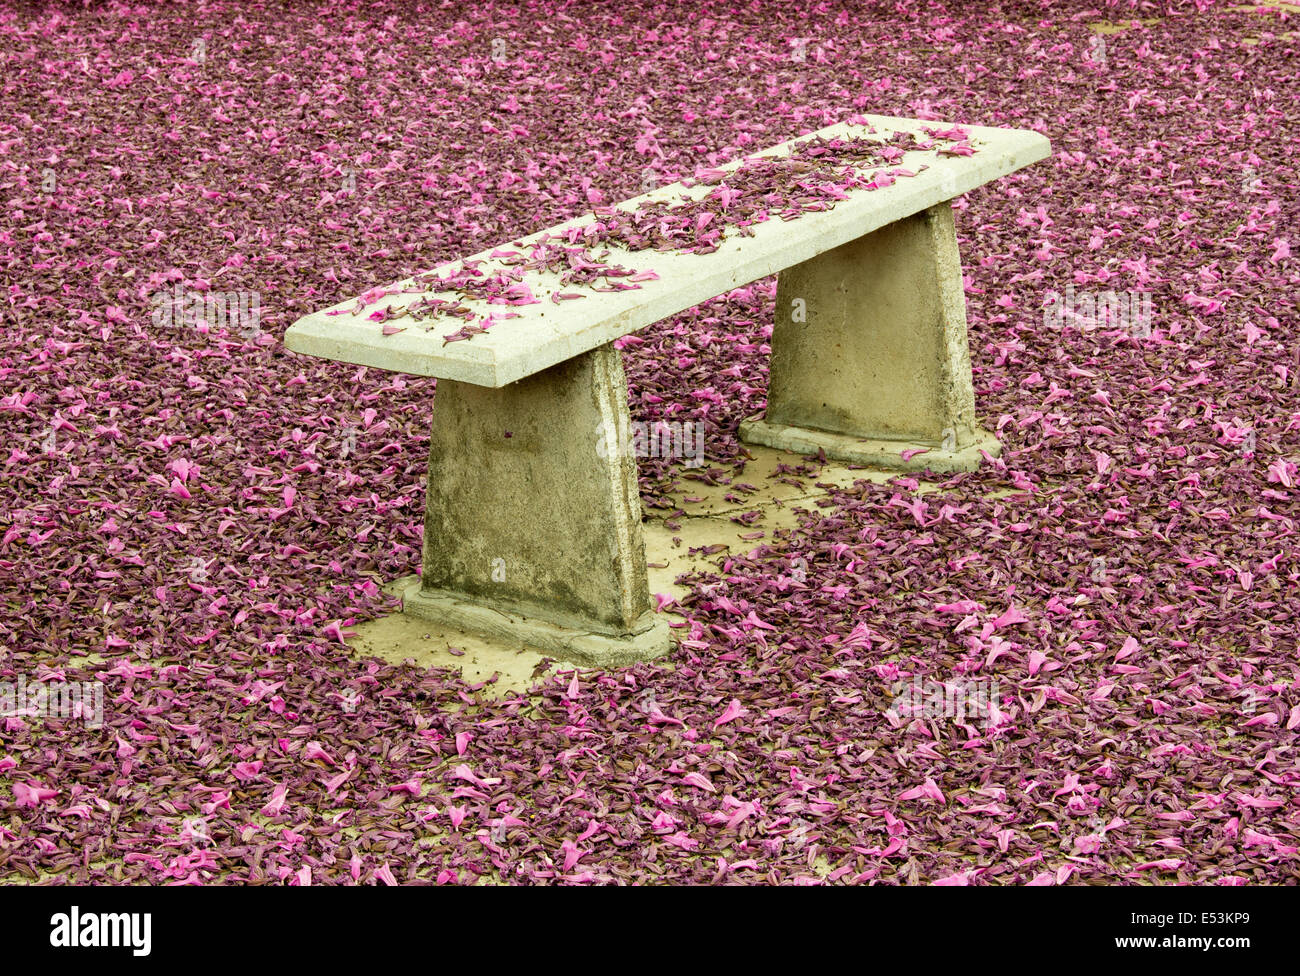 Banc de parc à l'automne saison pleine de fleurs roses Banque D'Images